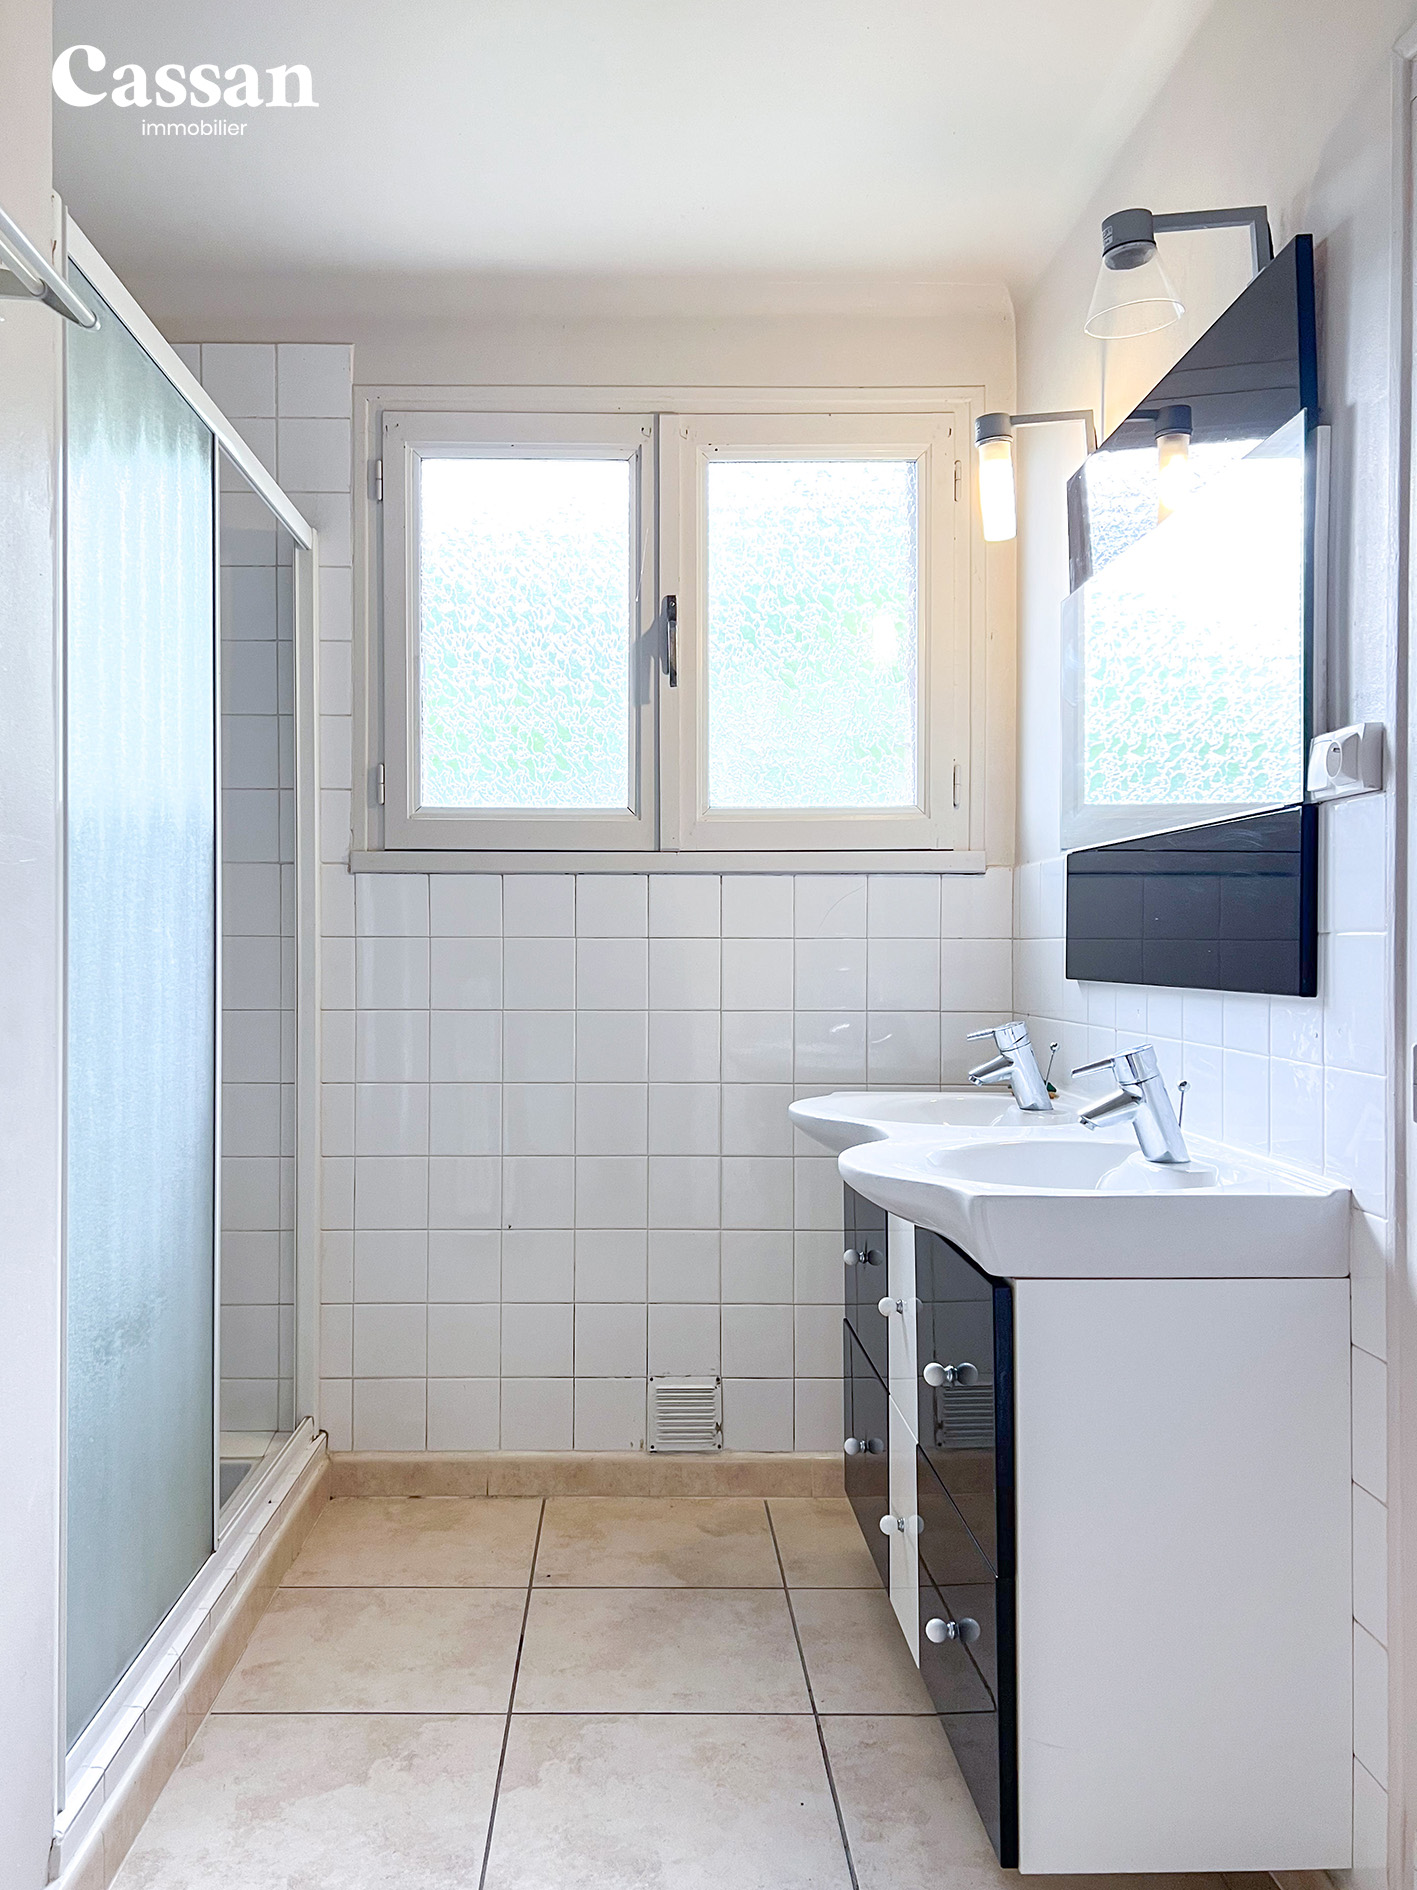 Salle de bain maison à vendre Bex Ytrac Cassan immobilier